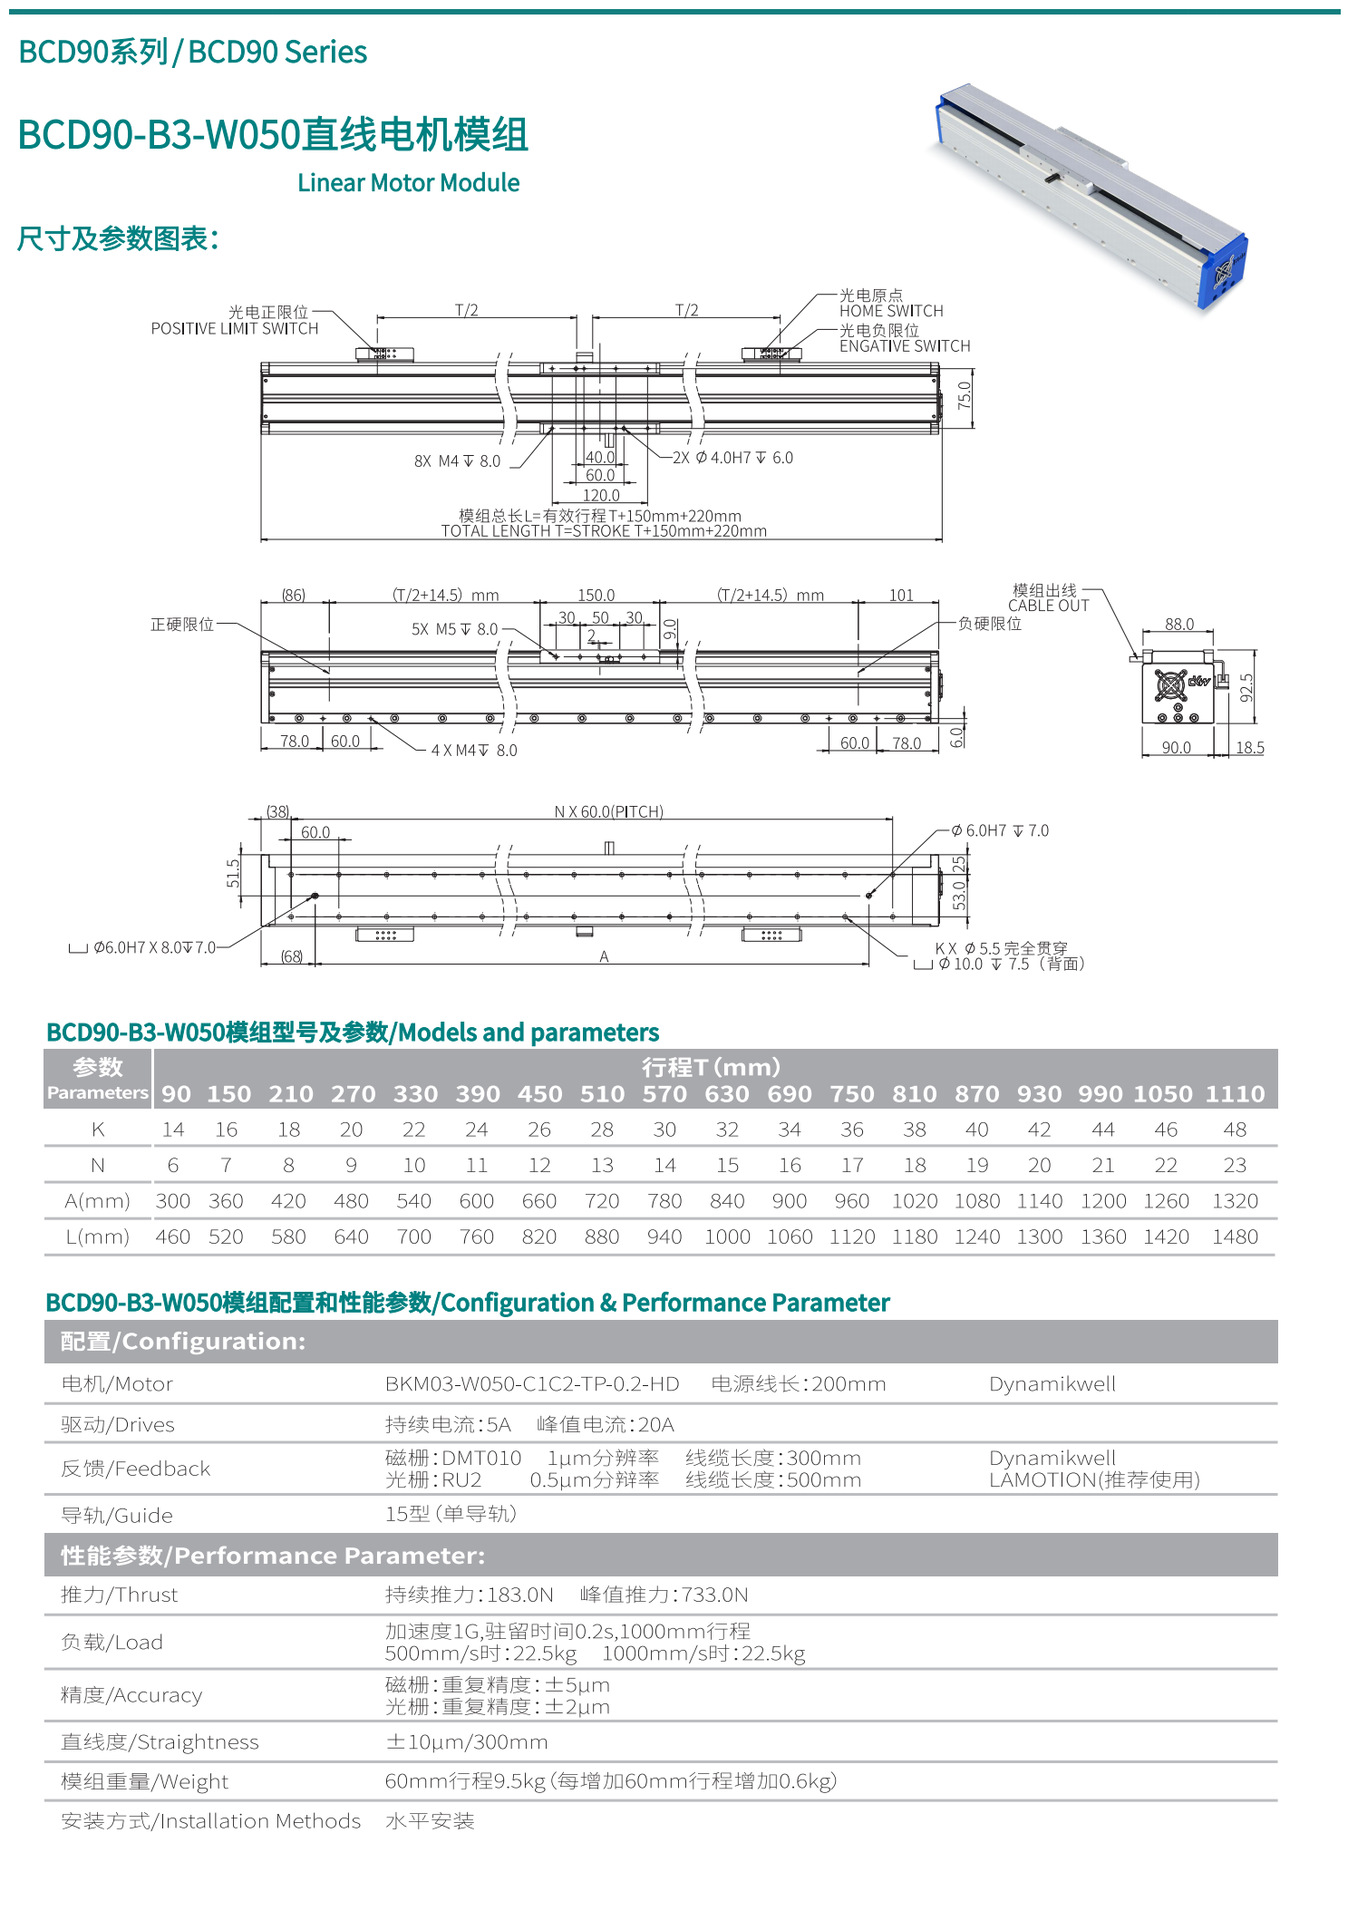 直线电机模组BCD90-B3-W050